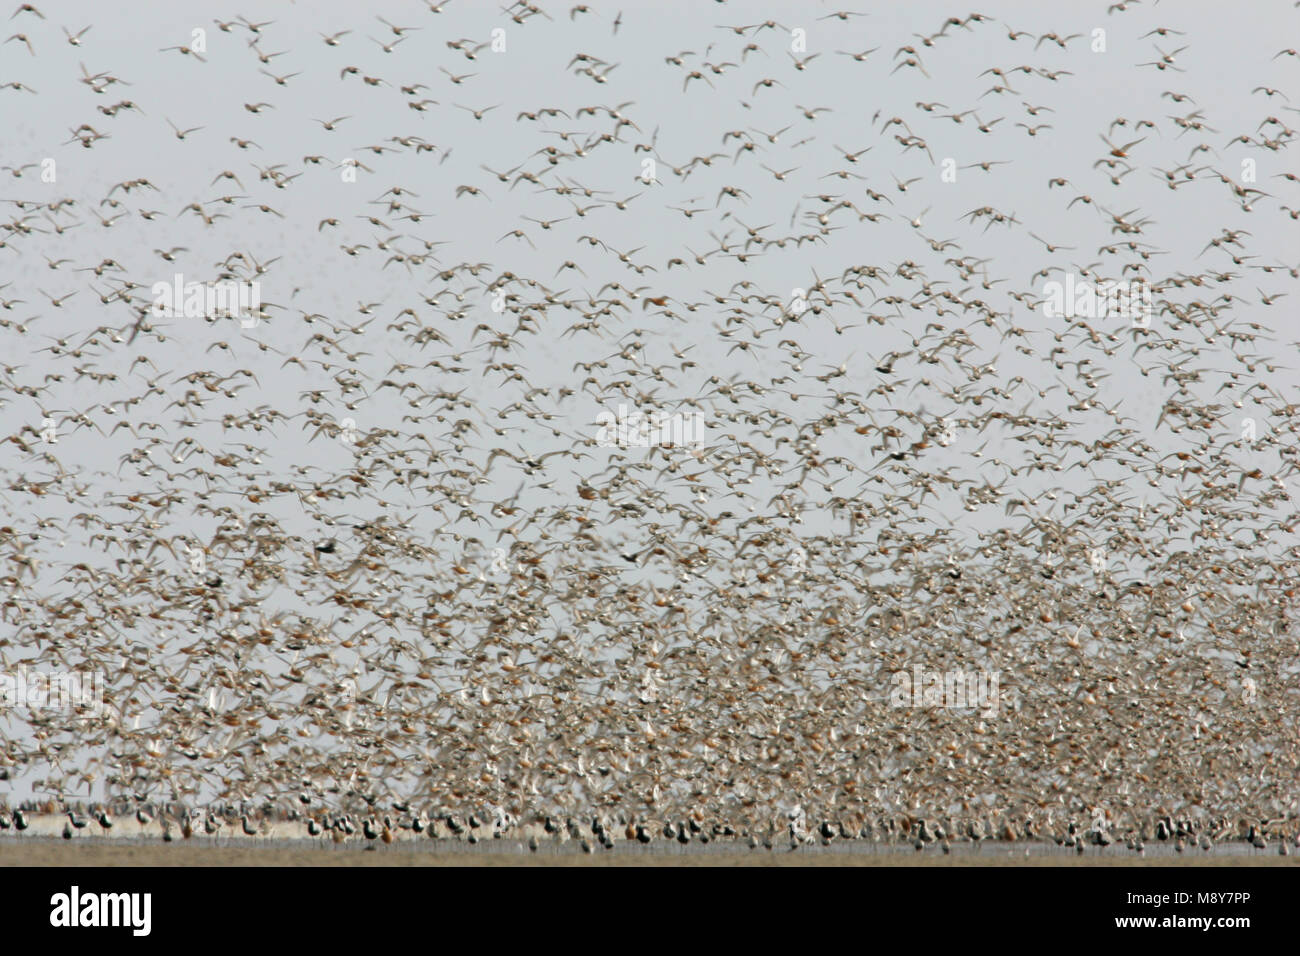 Steltlopers vliegend bij hoogwatervluchtplaats; Waders flying with high tide Stock Photo